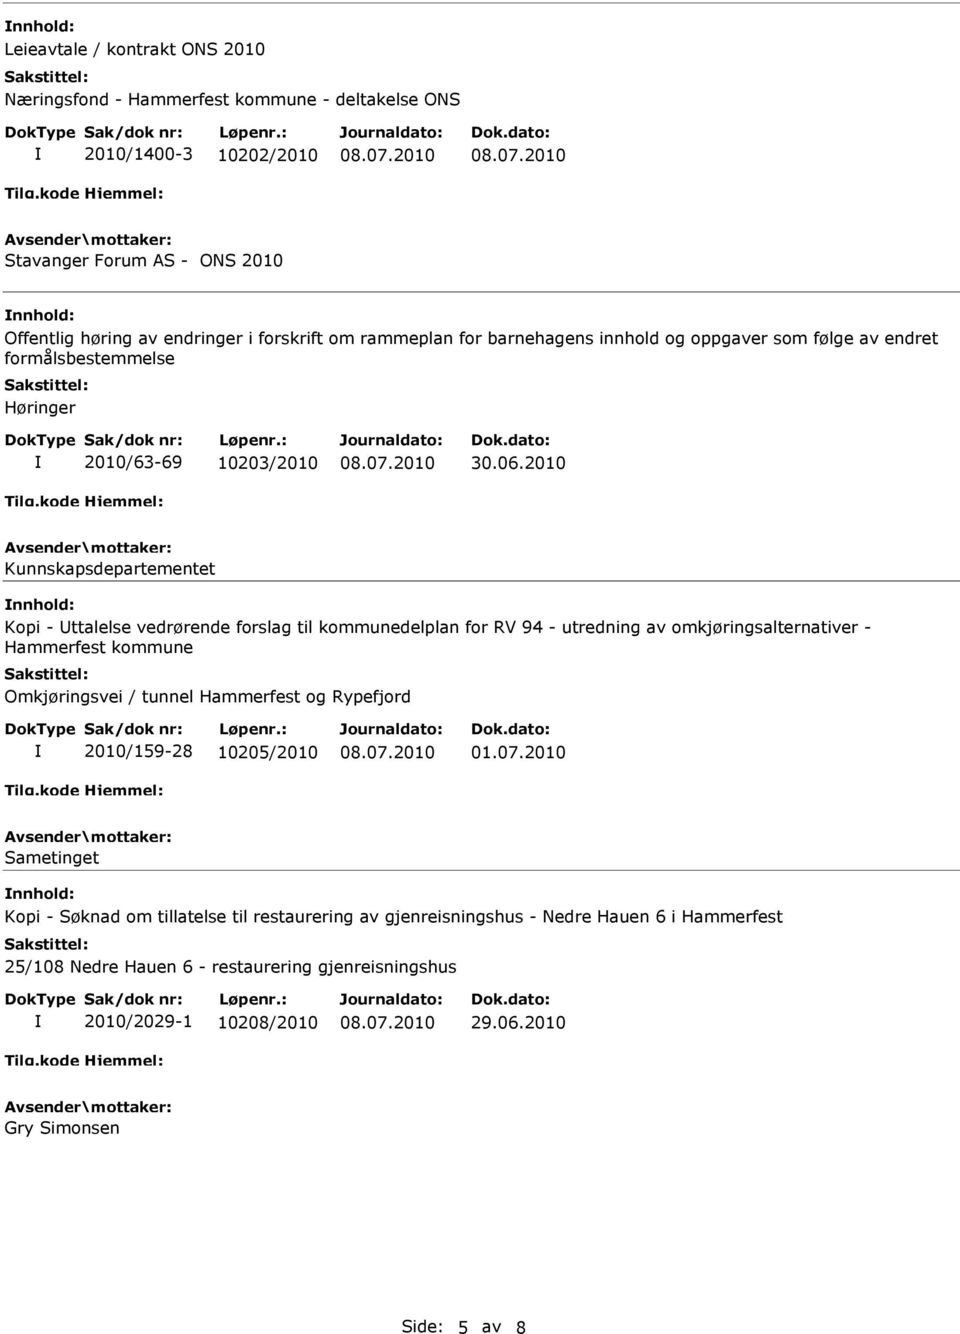 2010 Kunnskapsdepartementet Kopi - ttalelse vedrørende forslag til kommunedelplan for RV 94 - utredning av omkjøringsalternativer - Hammerfest kommune Omkjøringsvei / tunnel Hammerfest og